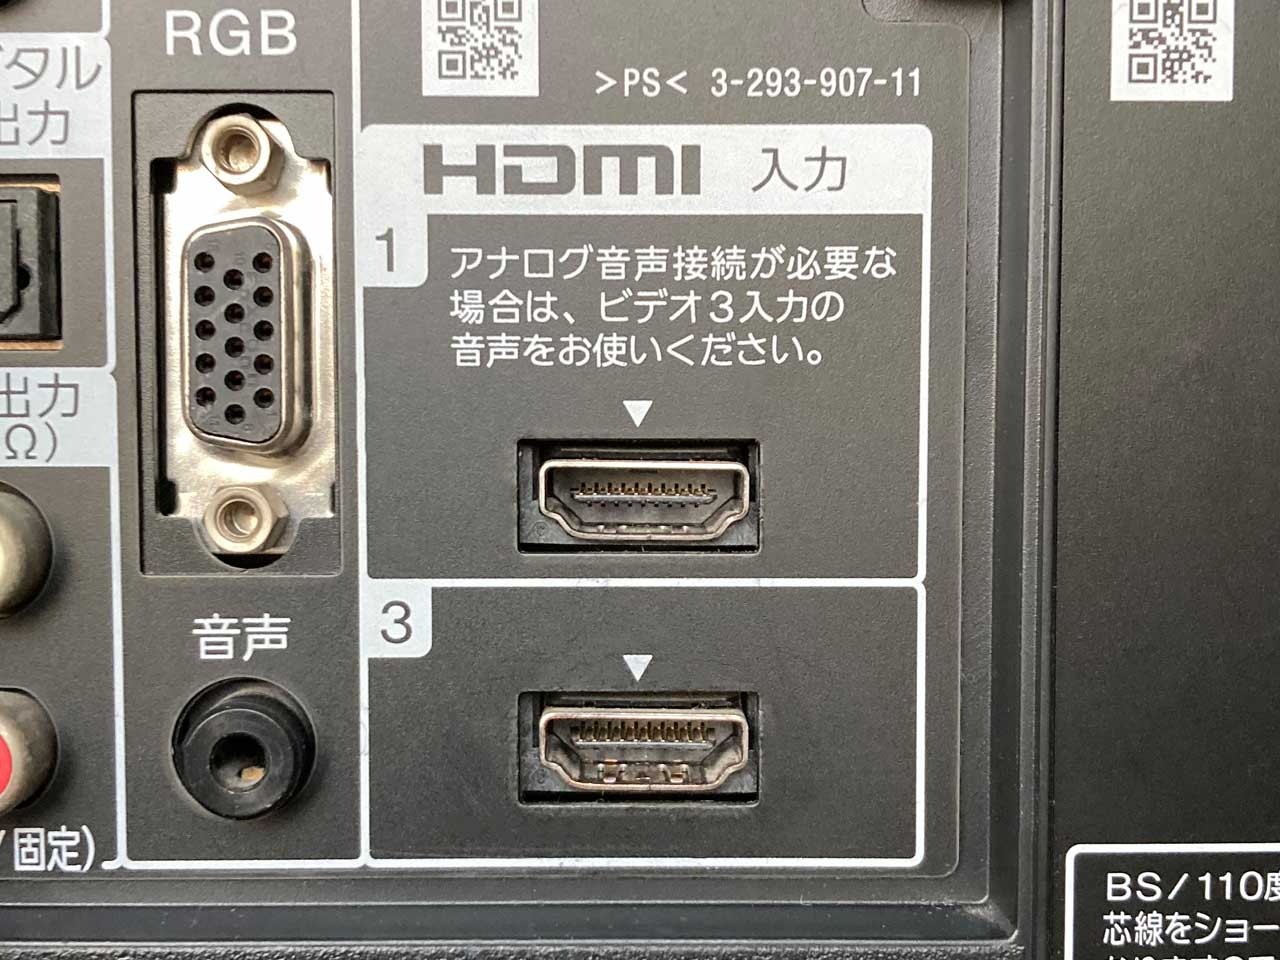 テレビのHDMIポートと番号を確認